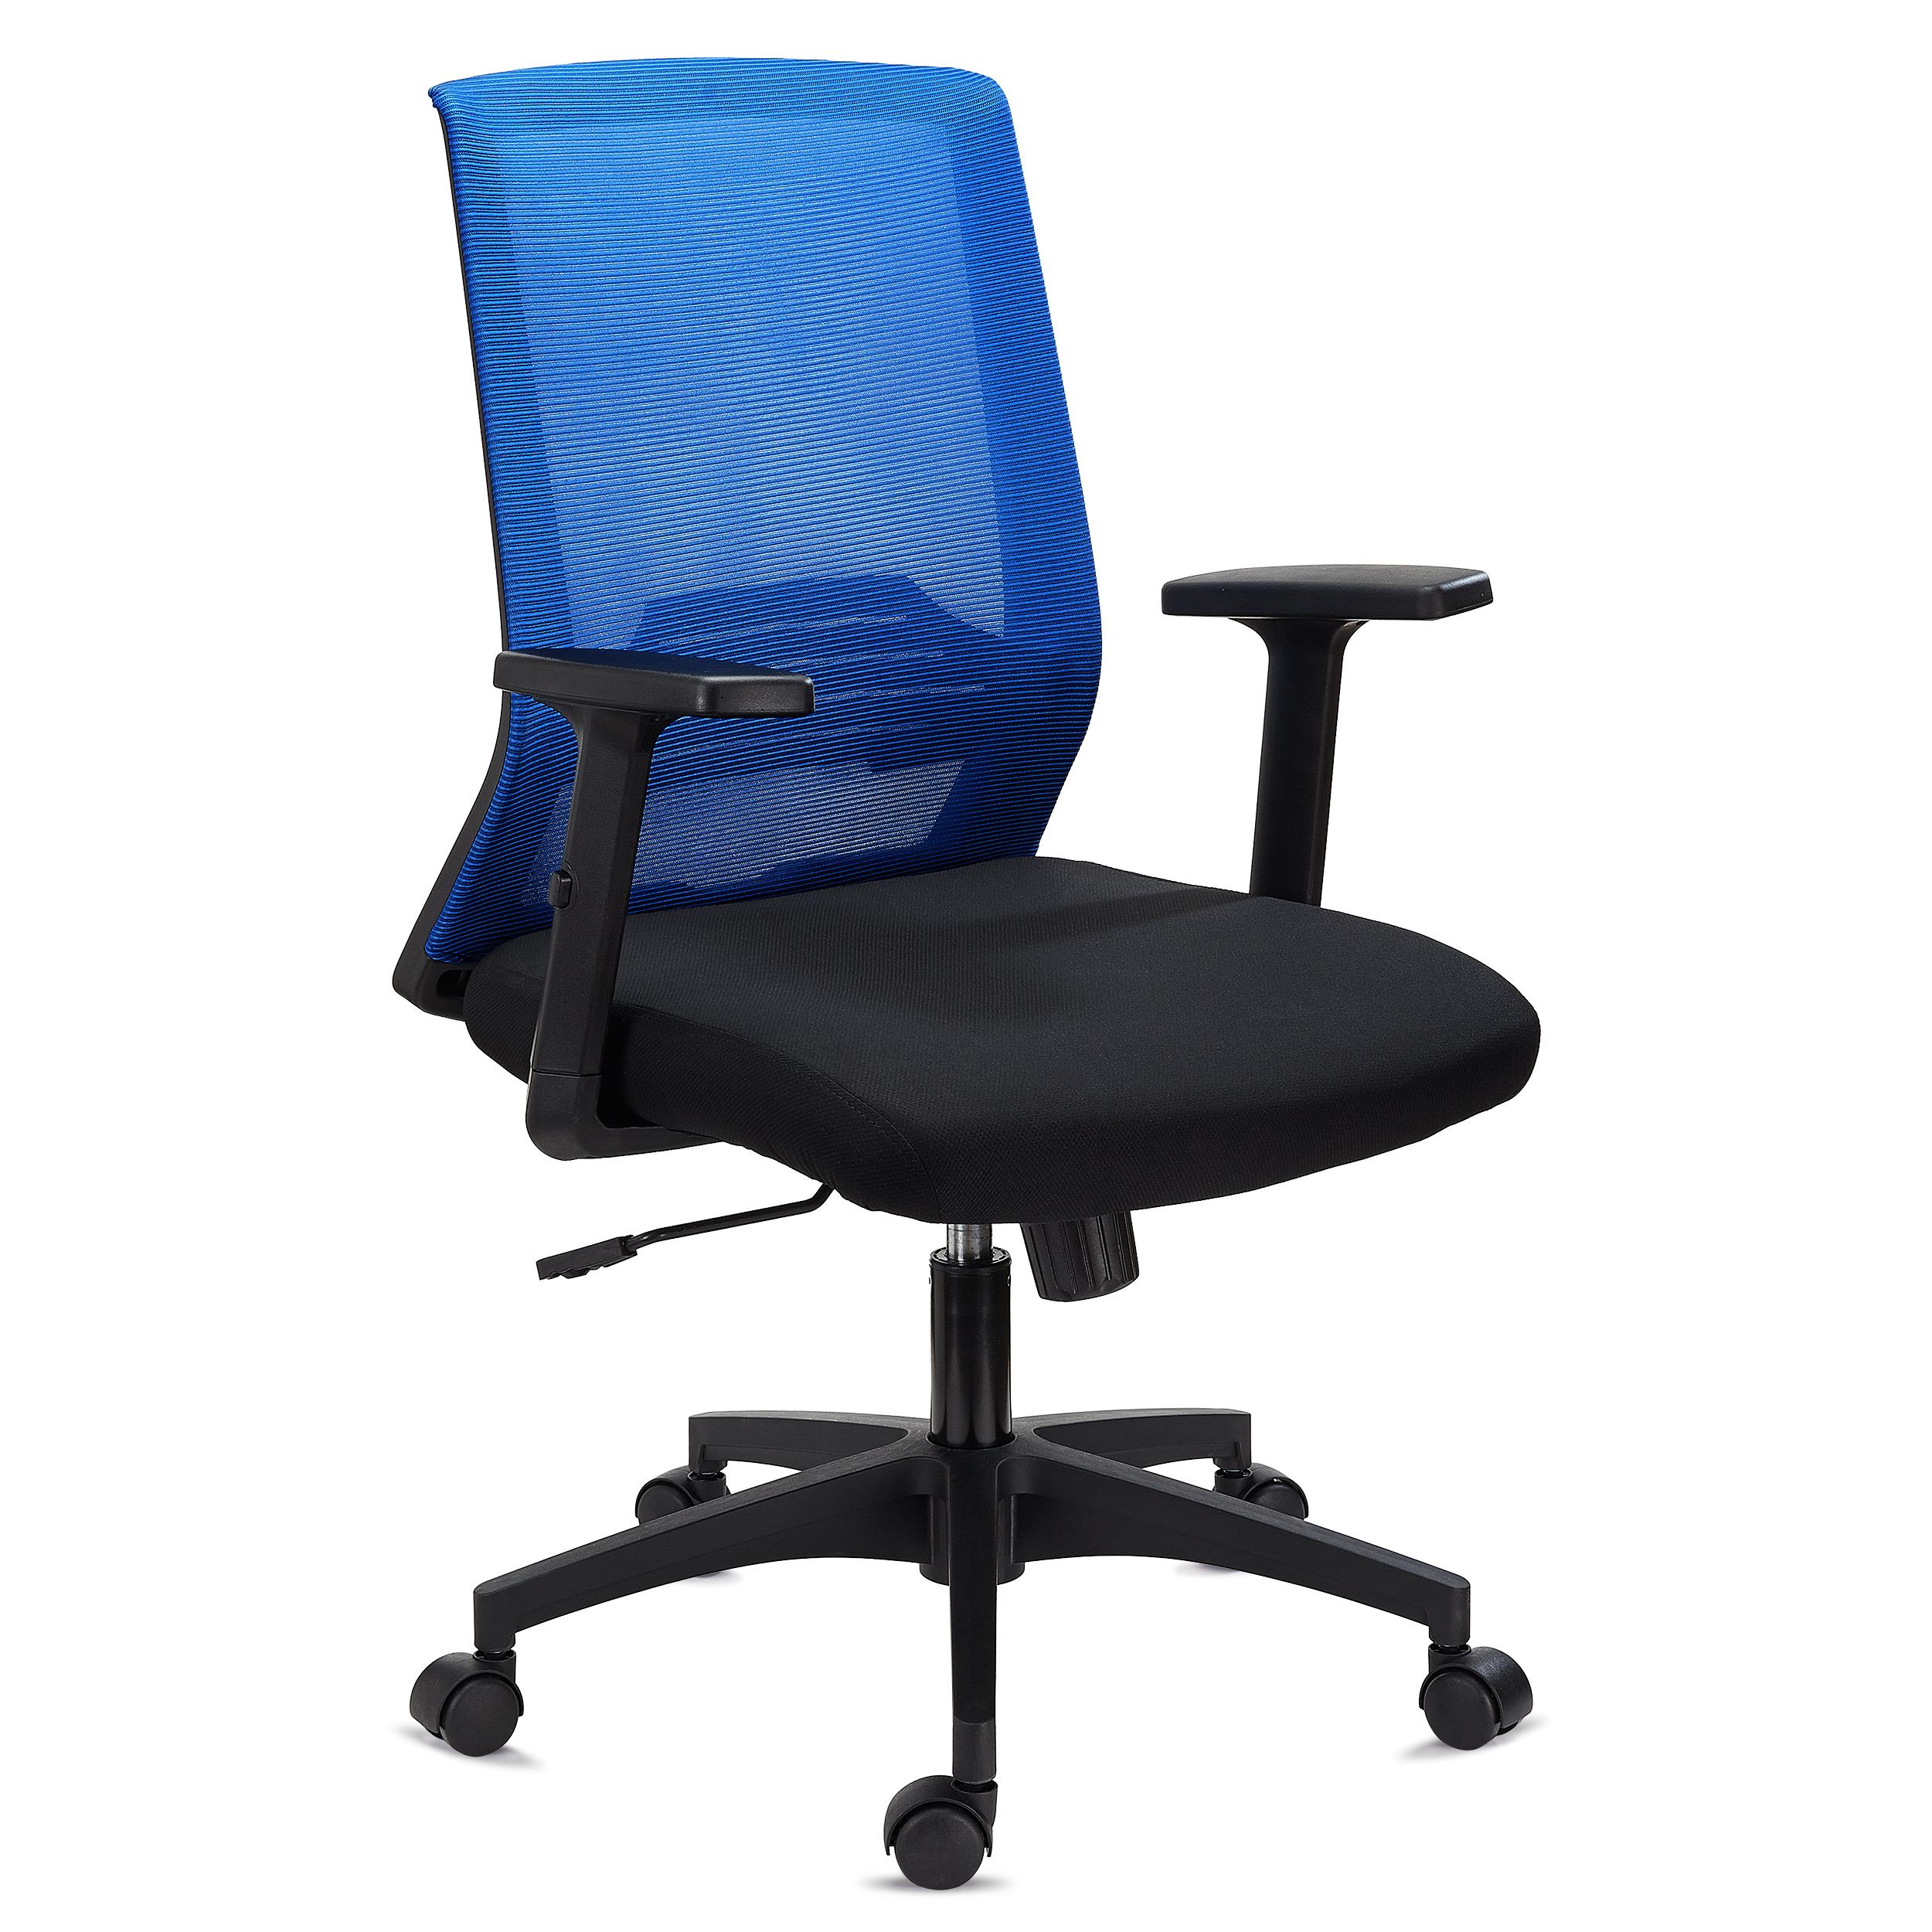 Chaise de Bureau MIAMI, Support Lombaire, Accoudoirs Ajustables, Confortable et Robuste, Bleu